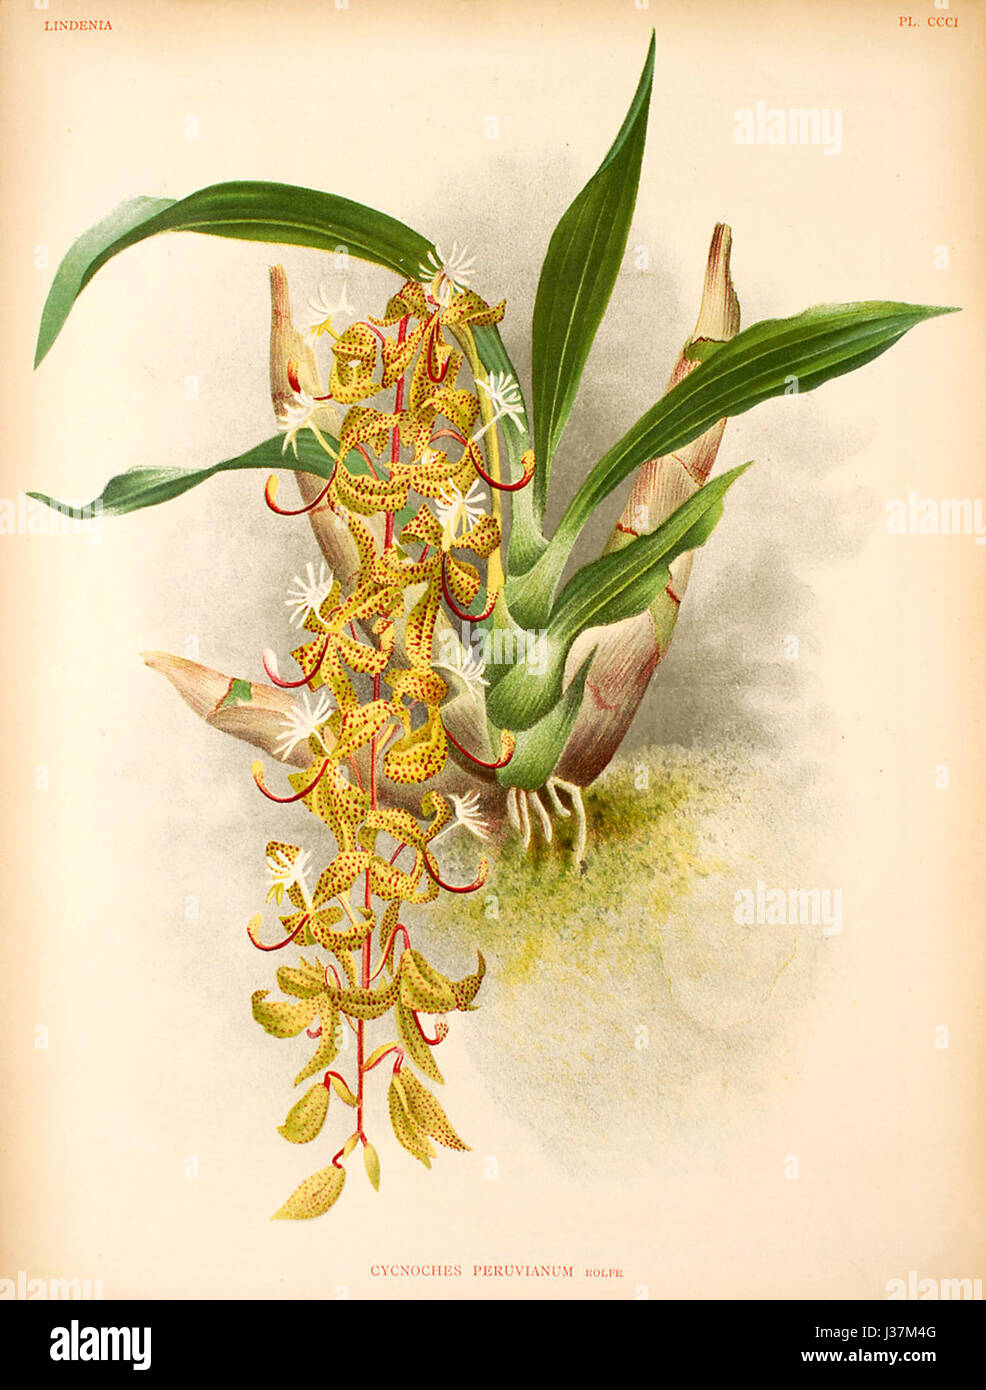 Cycnoches peruvianum   Lindenia Vol.7 plate 301 (1891 1892) Stock Photo